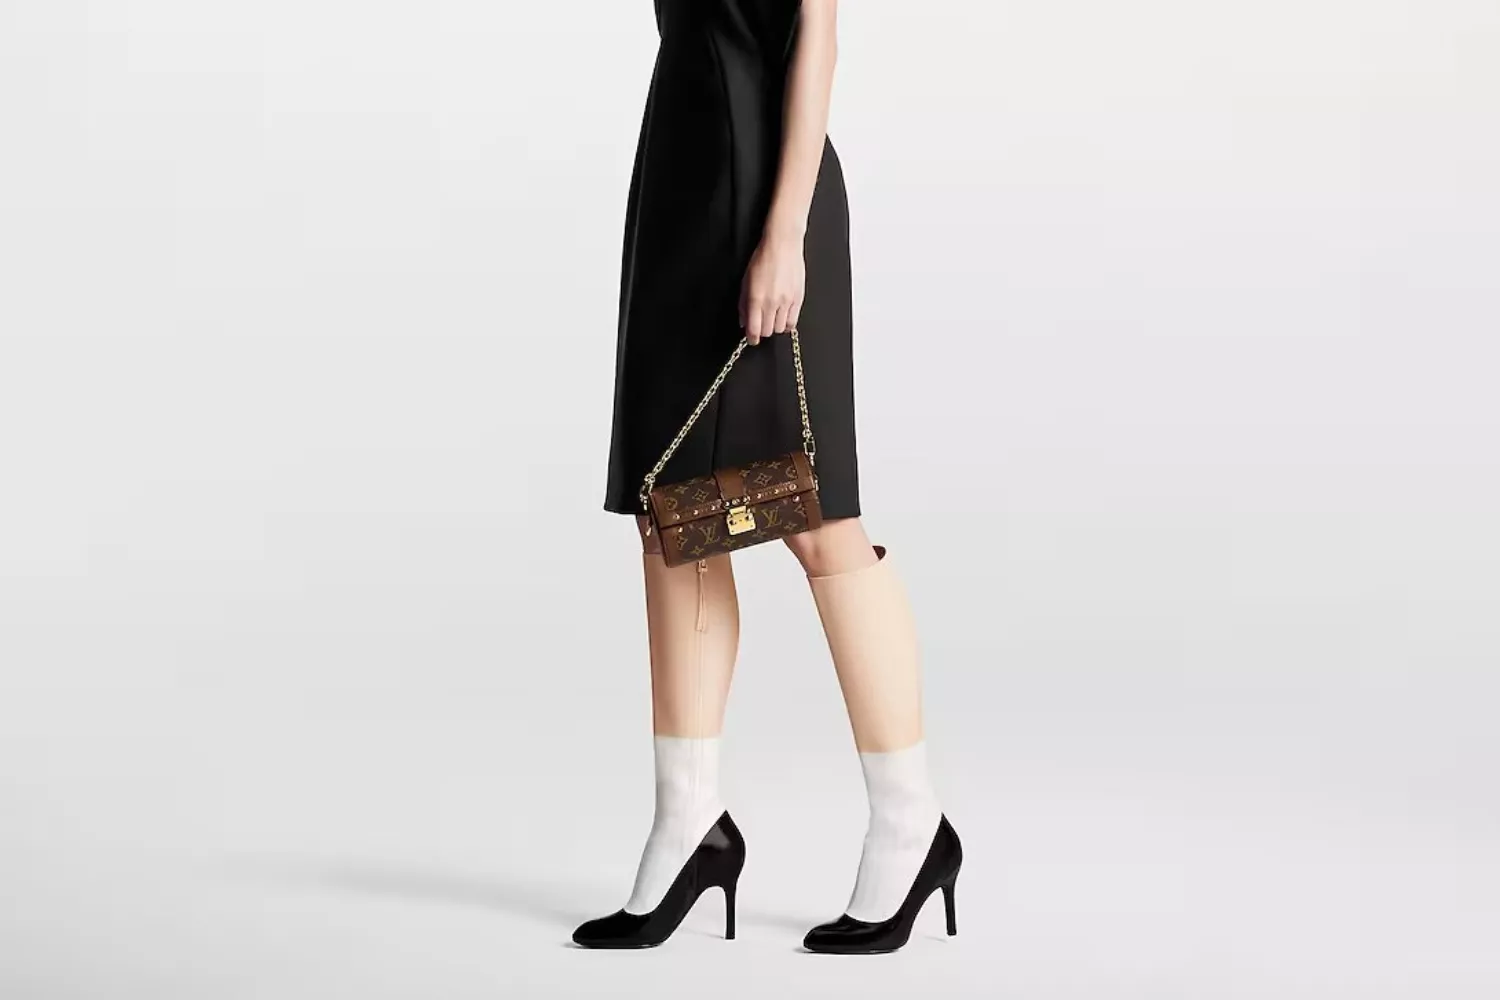 El bolso de Louis Vuitton de 3.200 euros que imita una bolsa